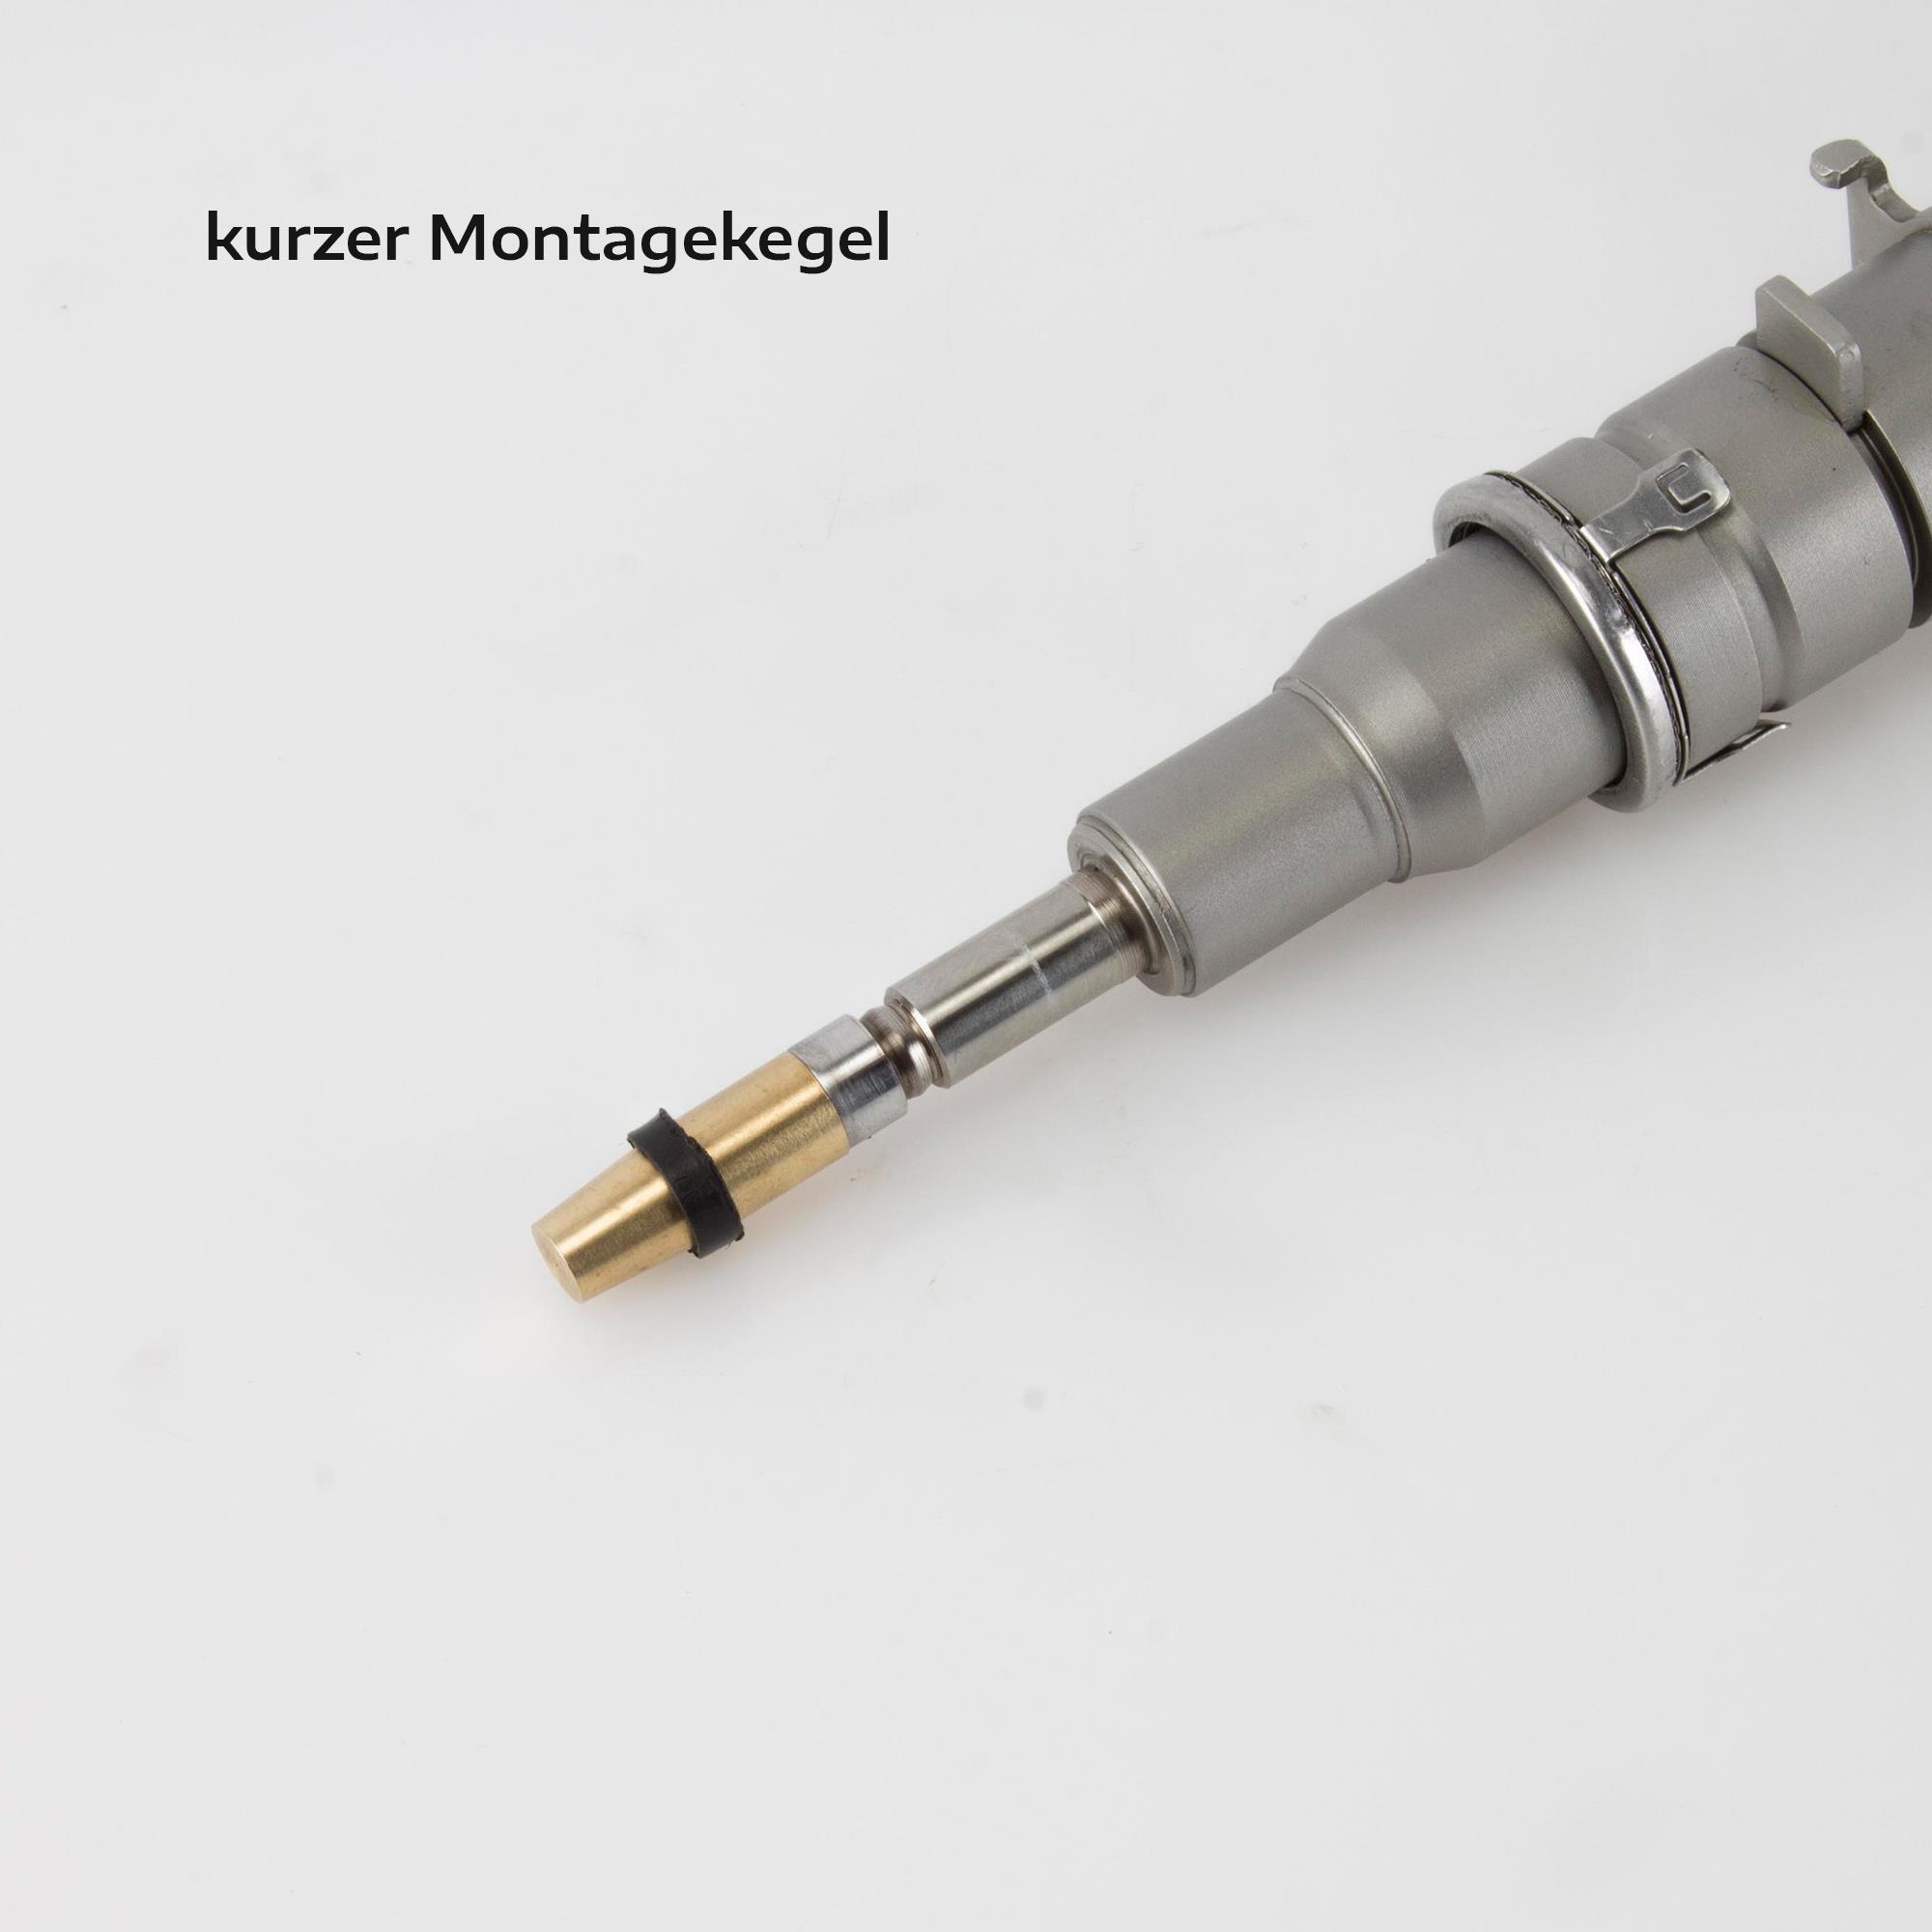 Injektor-Dichtring De- und Montage Werkzeug, für Gen. 1+2 BMW  Einspritzdüsen, Kraftstoff / Einspritzung, Spezialwerkzeug